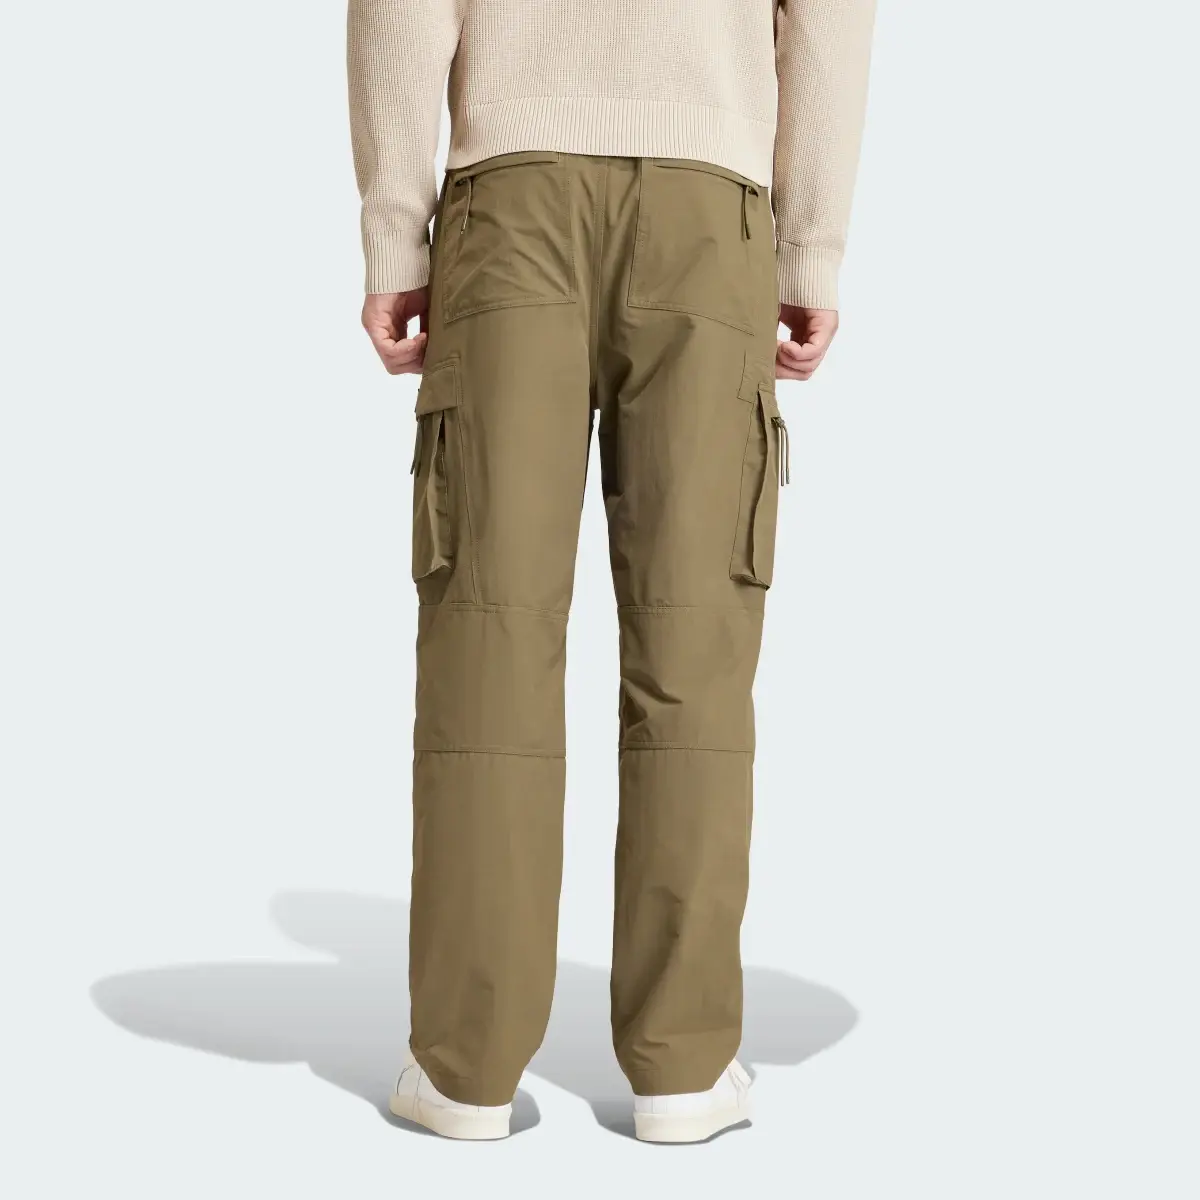 Adidas Pantaloni Rossendale. 2